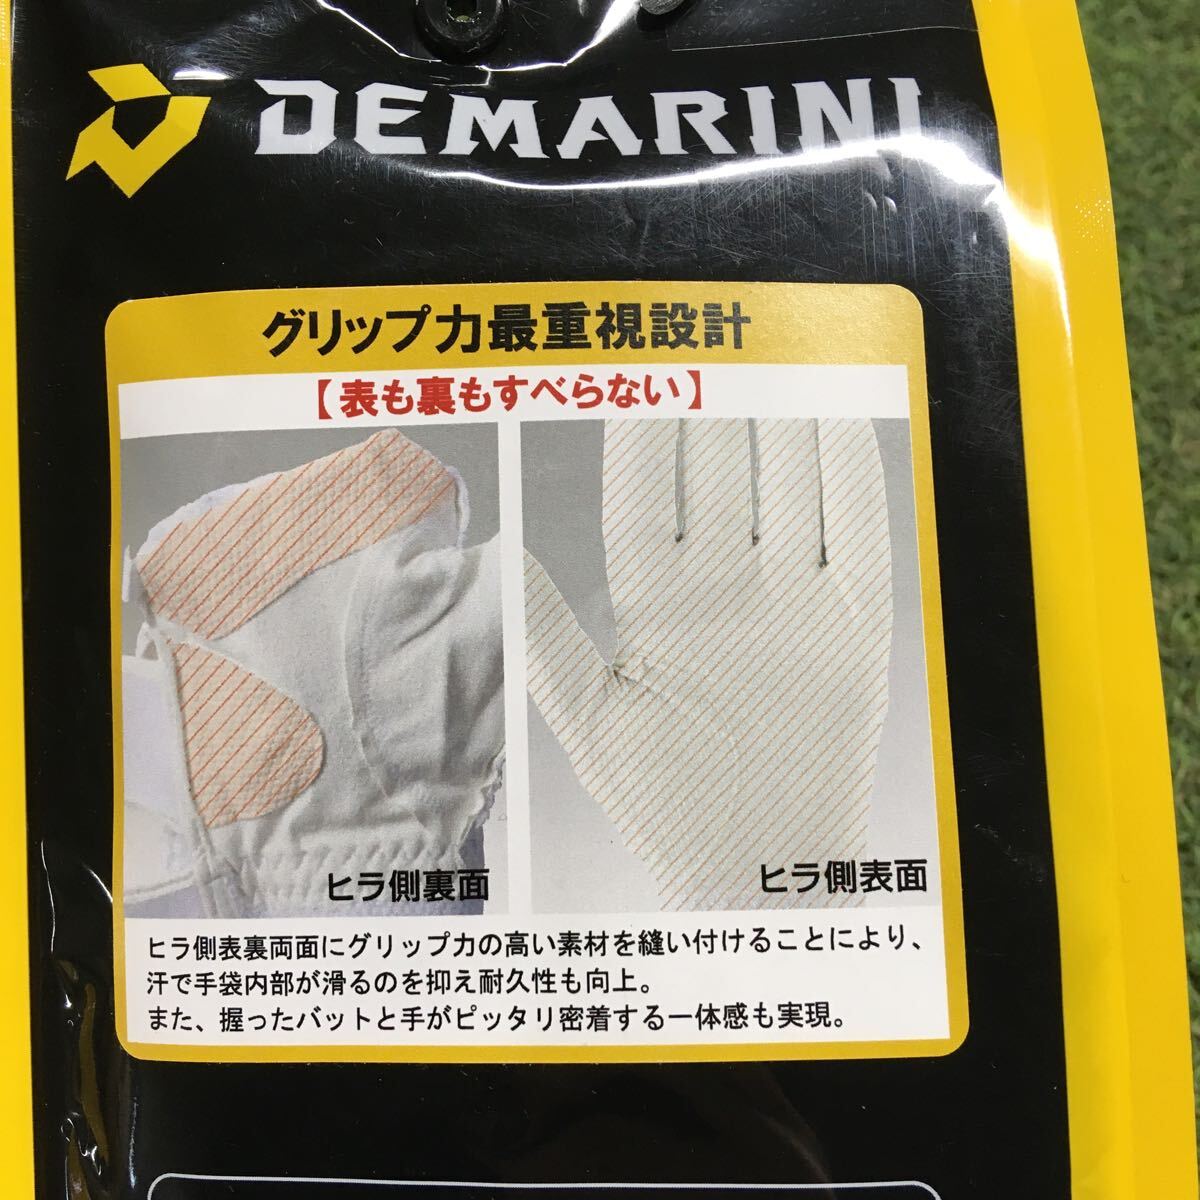 RK1227-A41 DeMARINI ディマリニ WB5745202M 両手用 Mサイズ バッティンググラブ 野球 ベースボール 未使用 展示品 手袋の画像4